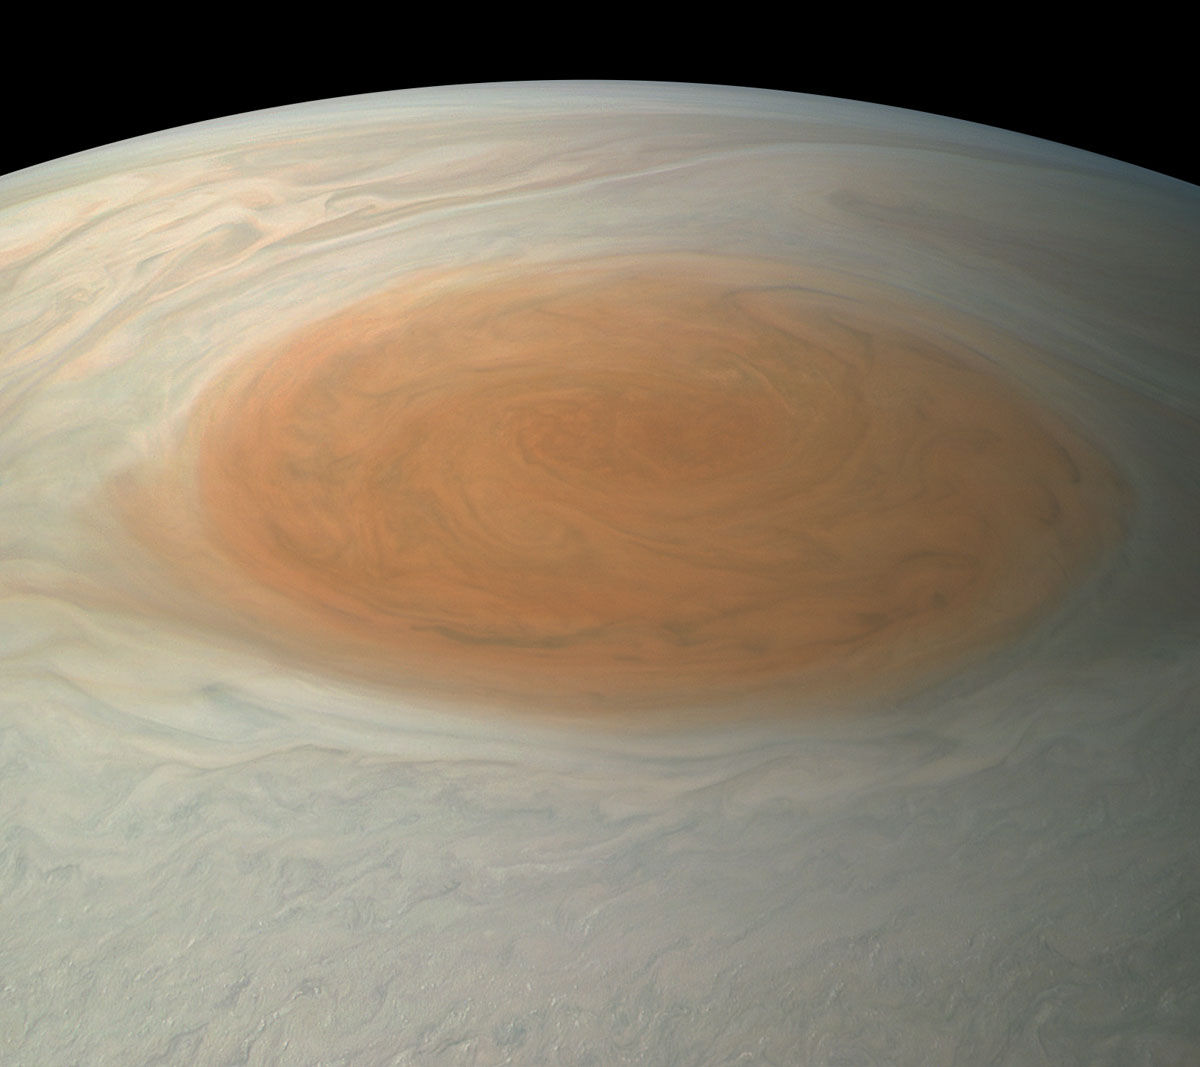 Imagens de close-up de Jpiter revelam uma paisagem impressionista de gases turbulentos 10